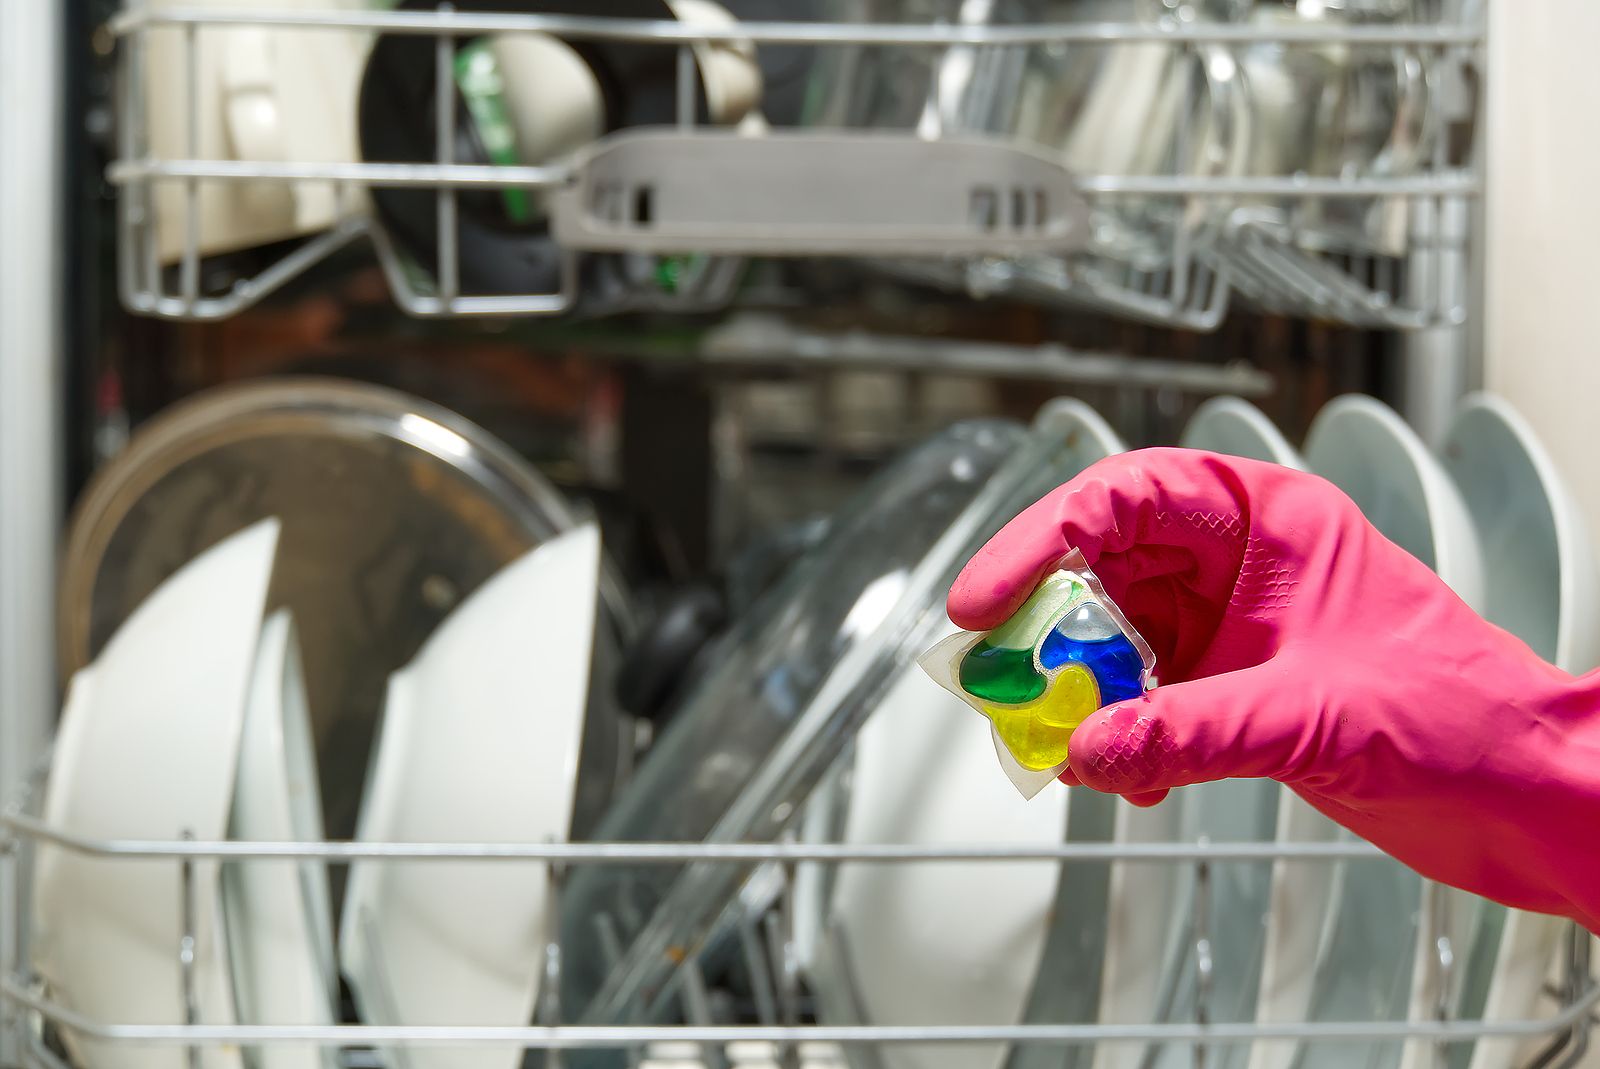 Los 10 mejores detergentes para lavavajillas por menos de 10 euros, según la OCU